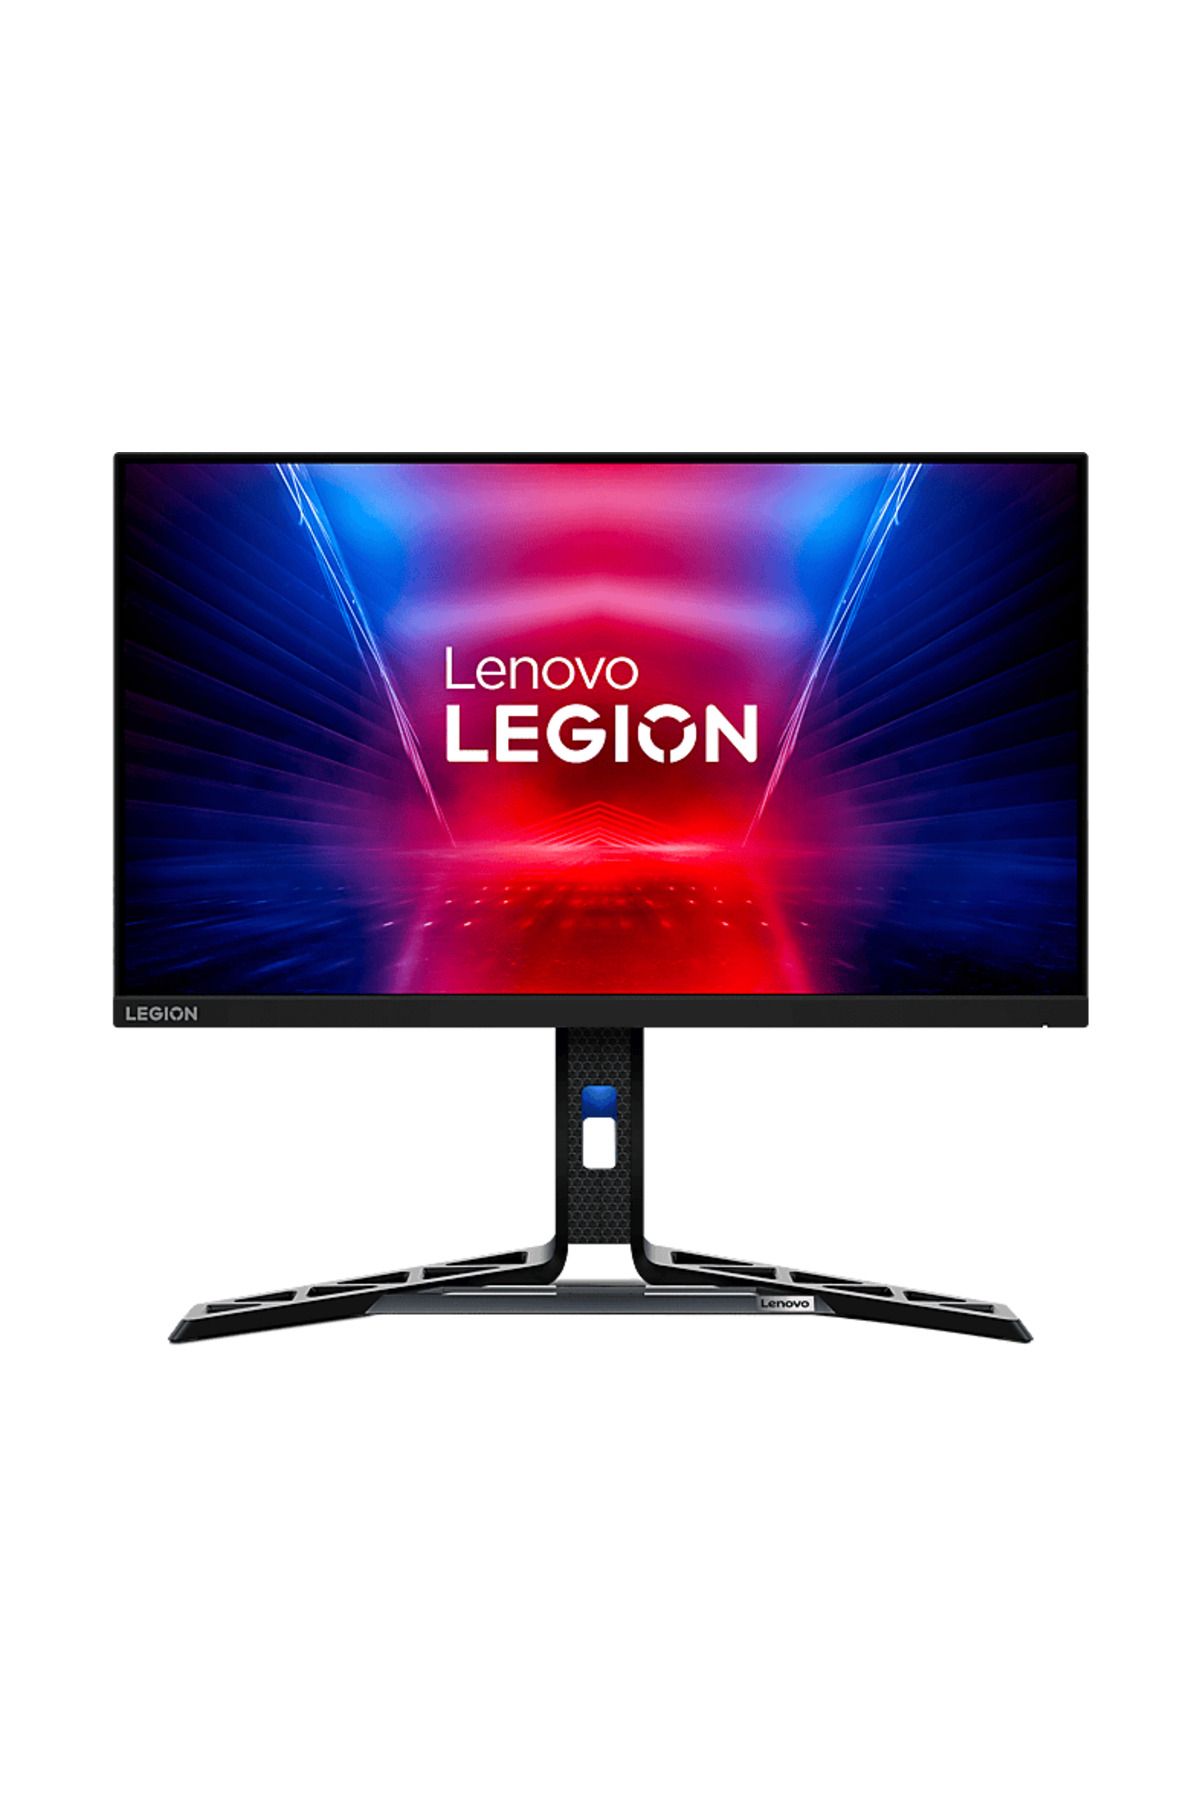 LENOVO Legion R25f-30 24.5 inç 240Hz(280Hz OC) 0.5ms Pivot FreeSync Full HD Gaming Monitör Siyah